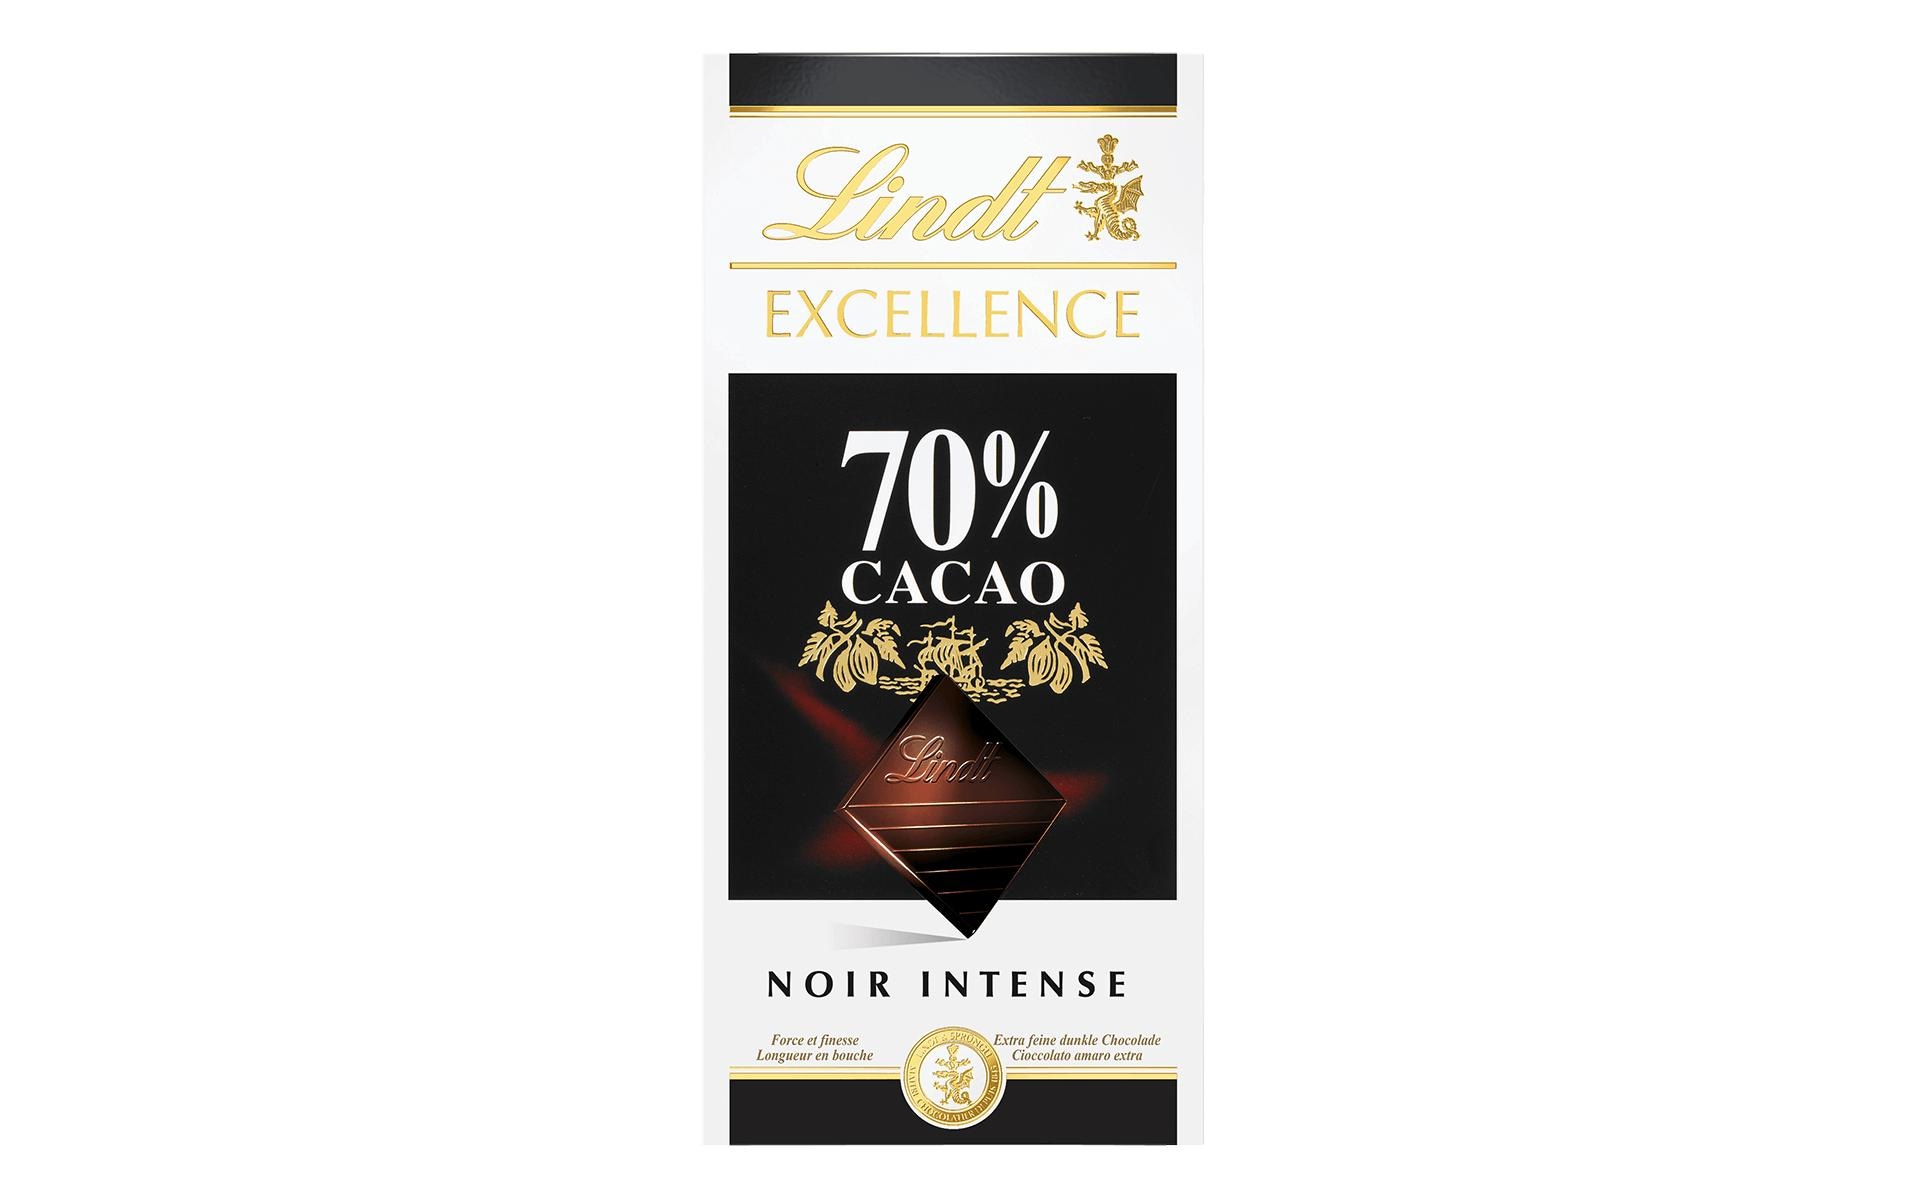 Lindt Tafelschokolade Excellence Dunkel 70% Kakao 100 g